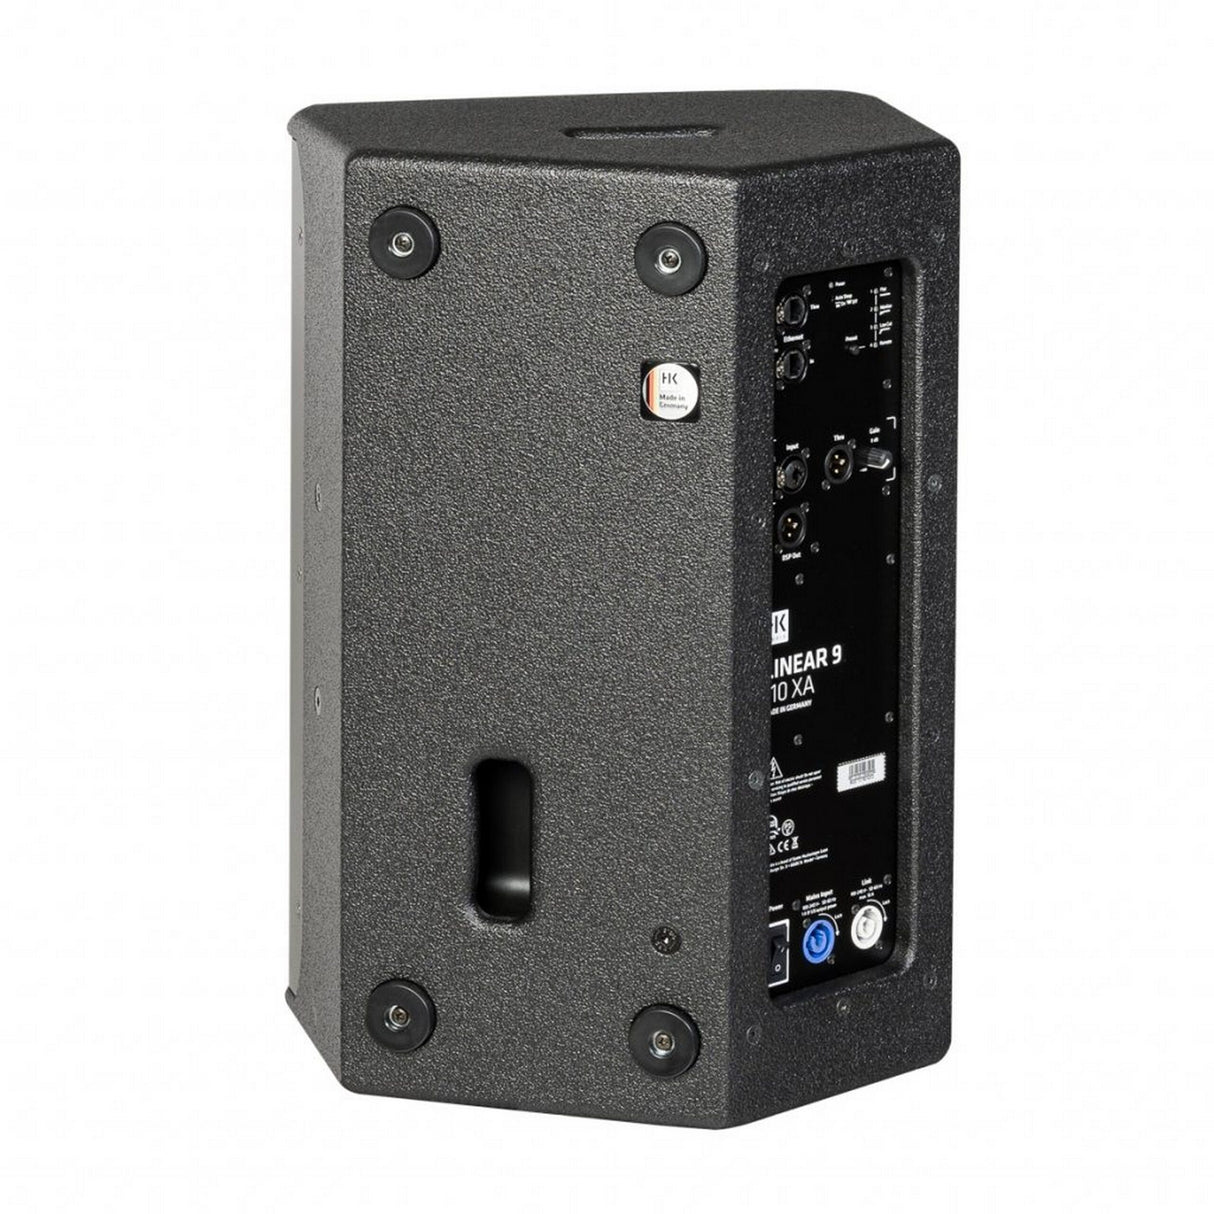 HK Audio Linear 9 110 XA 700W Active 10 Inch PA Speaker